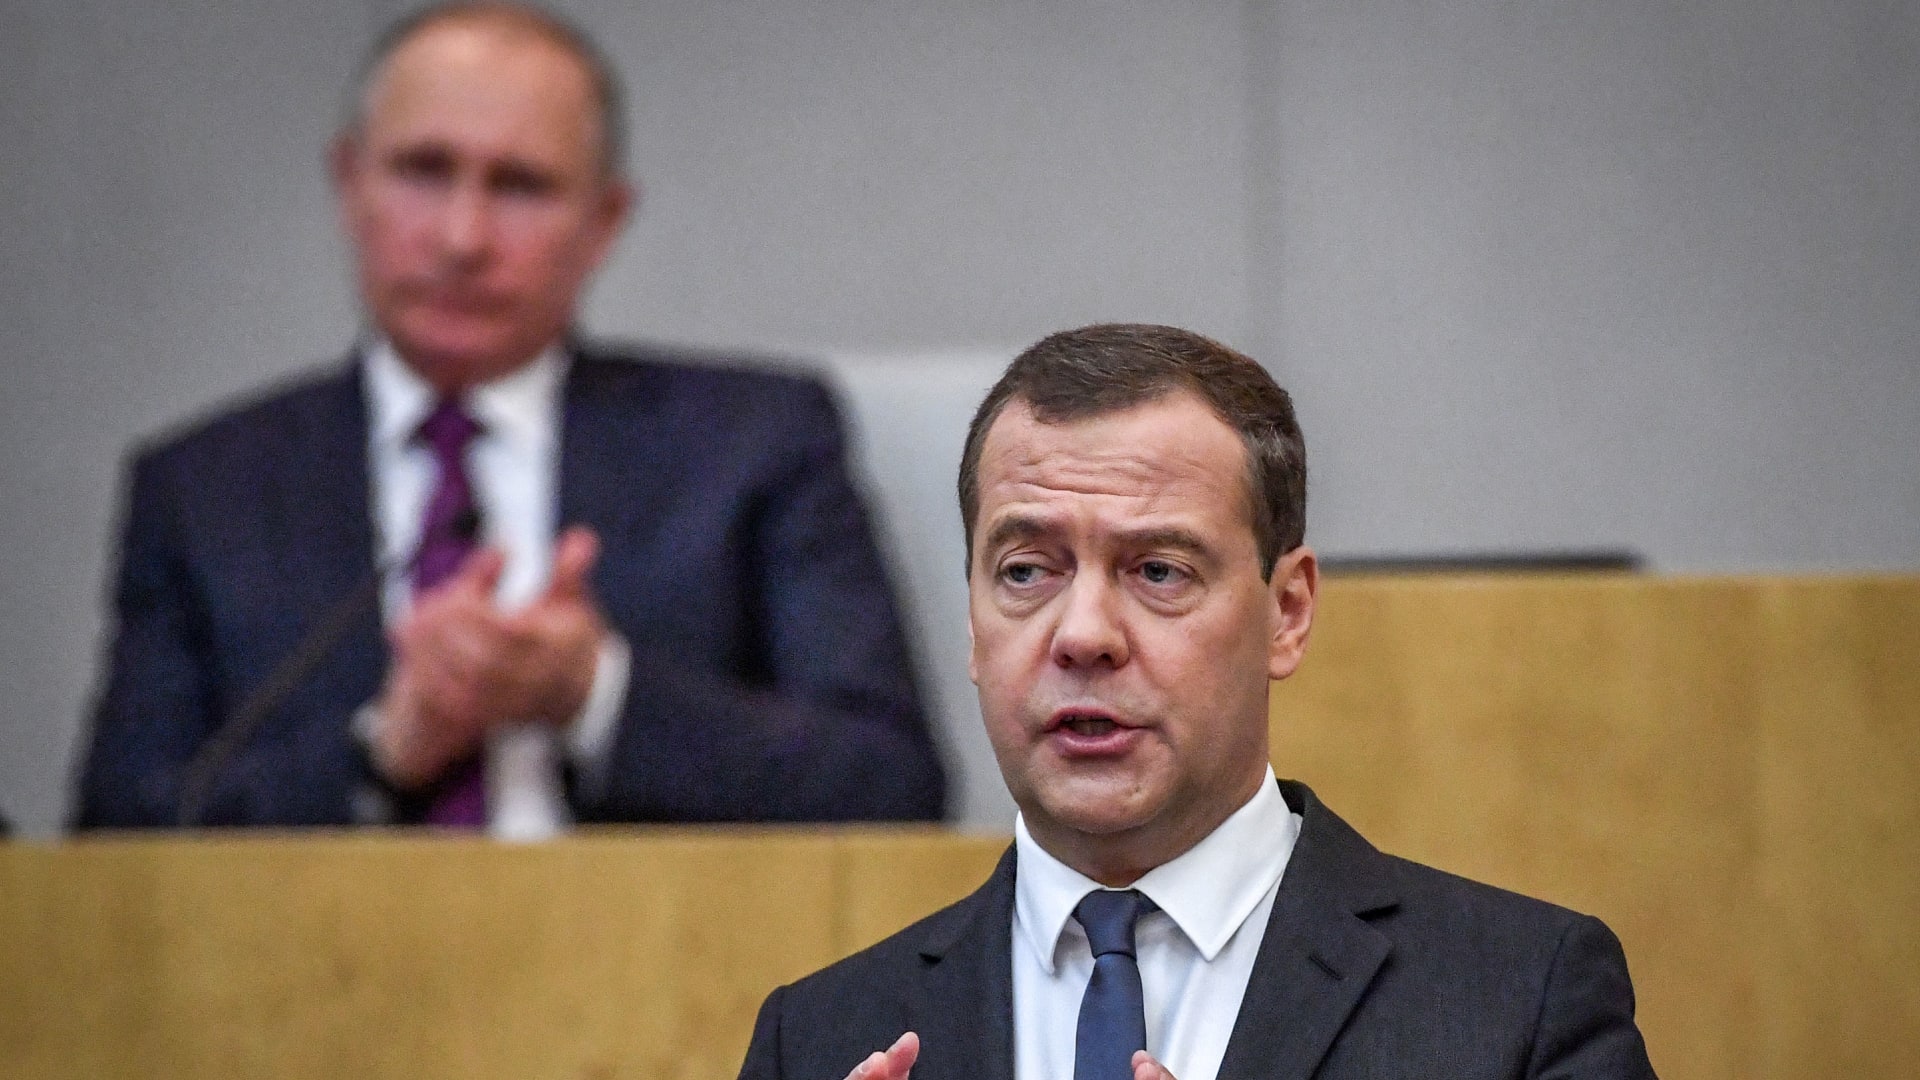 روسيا ترد على وقف ألمانيا مصادقة خط غاز "نورد ستريم 2": "مرحبًا بكم في العالم الشجاع"